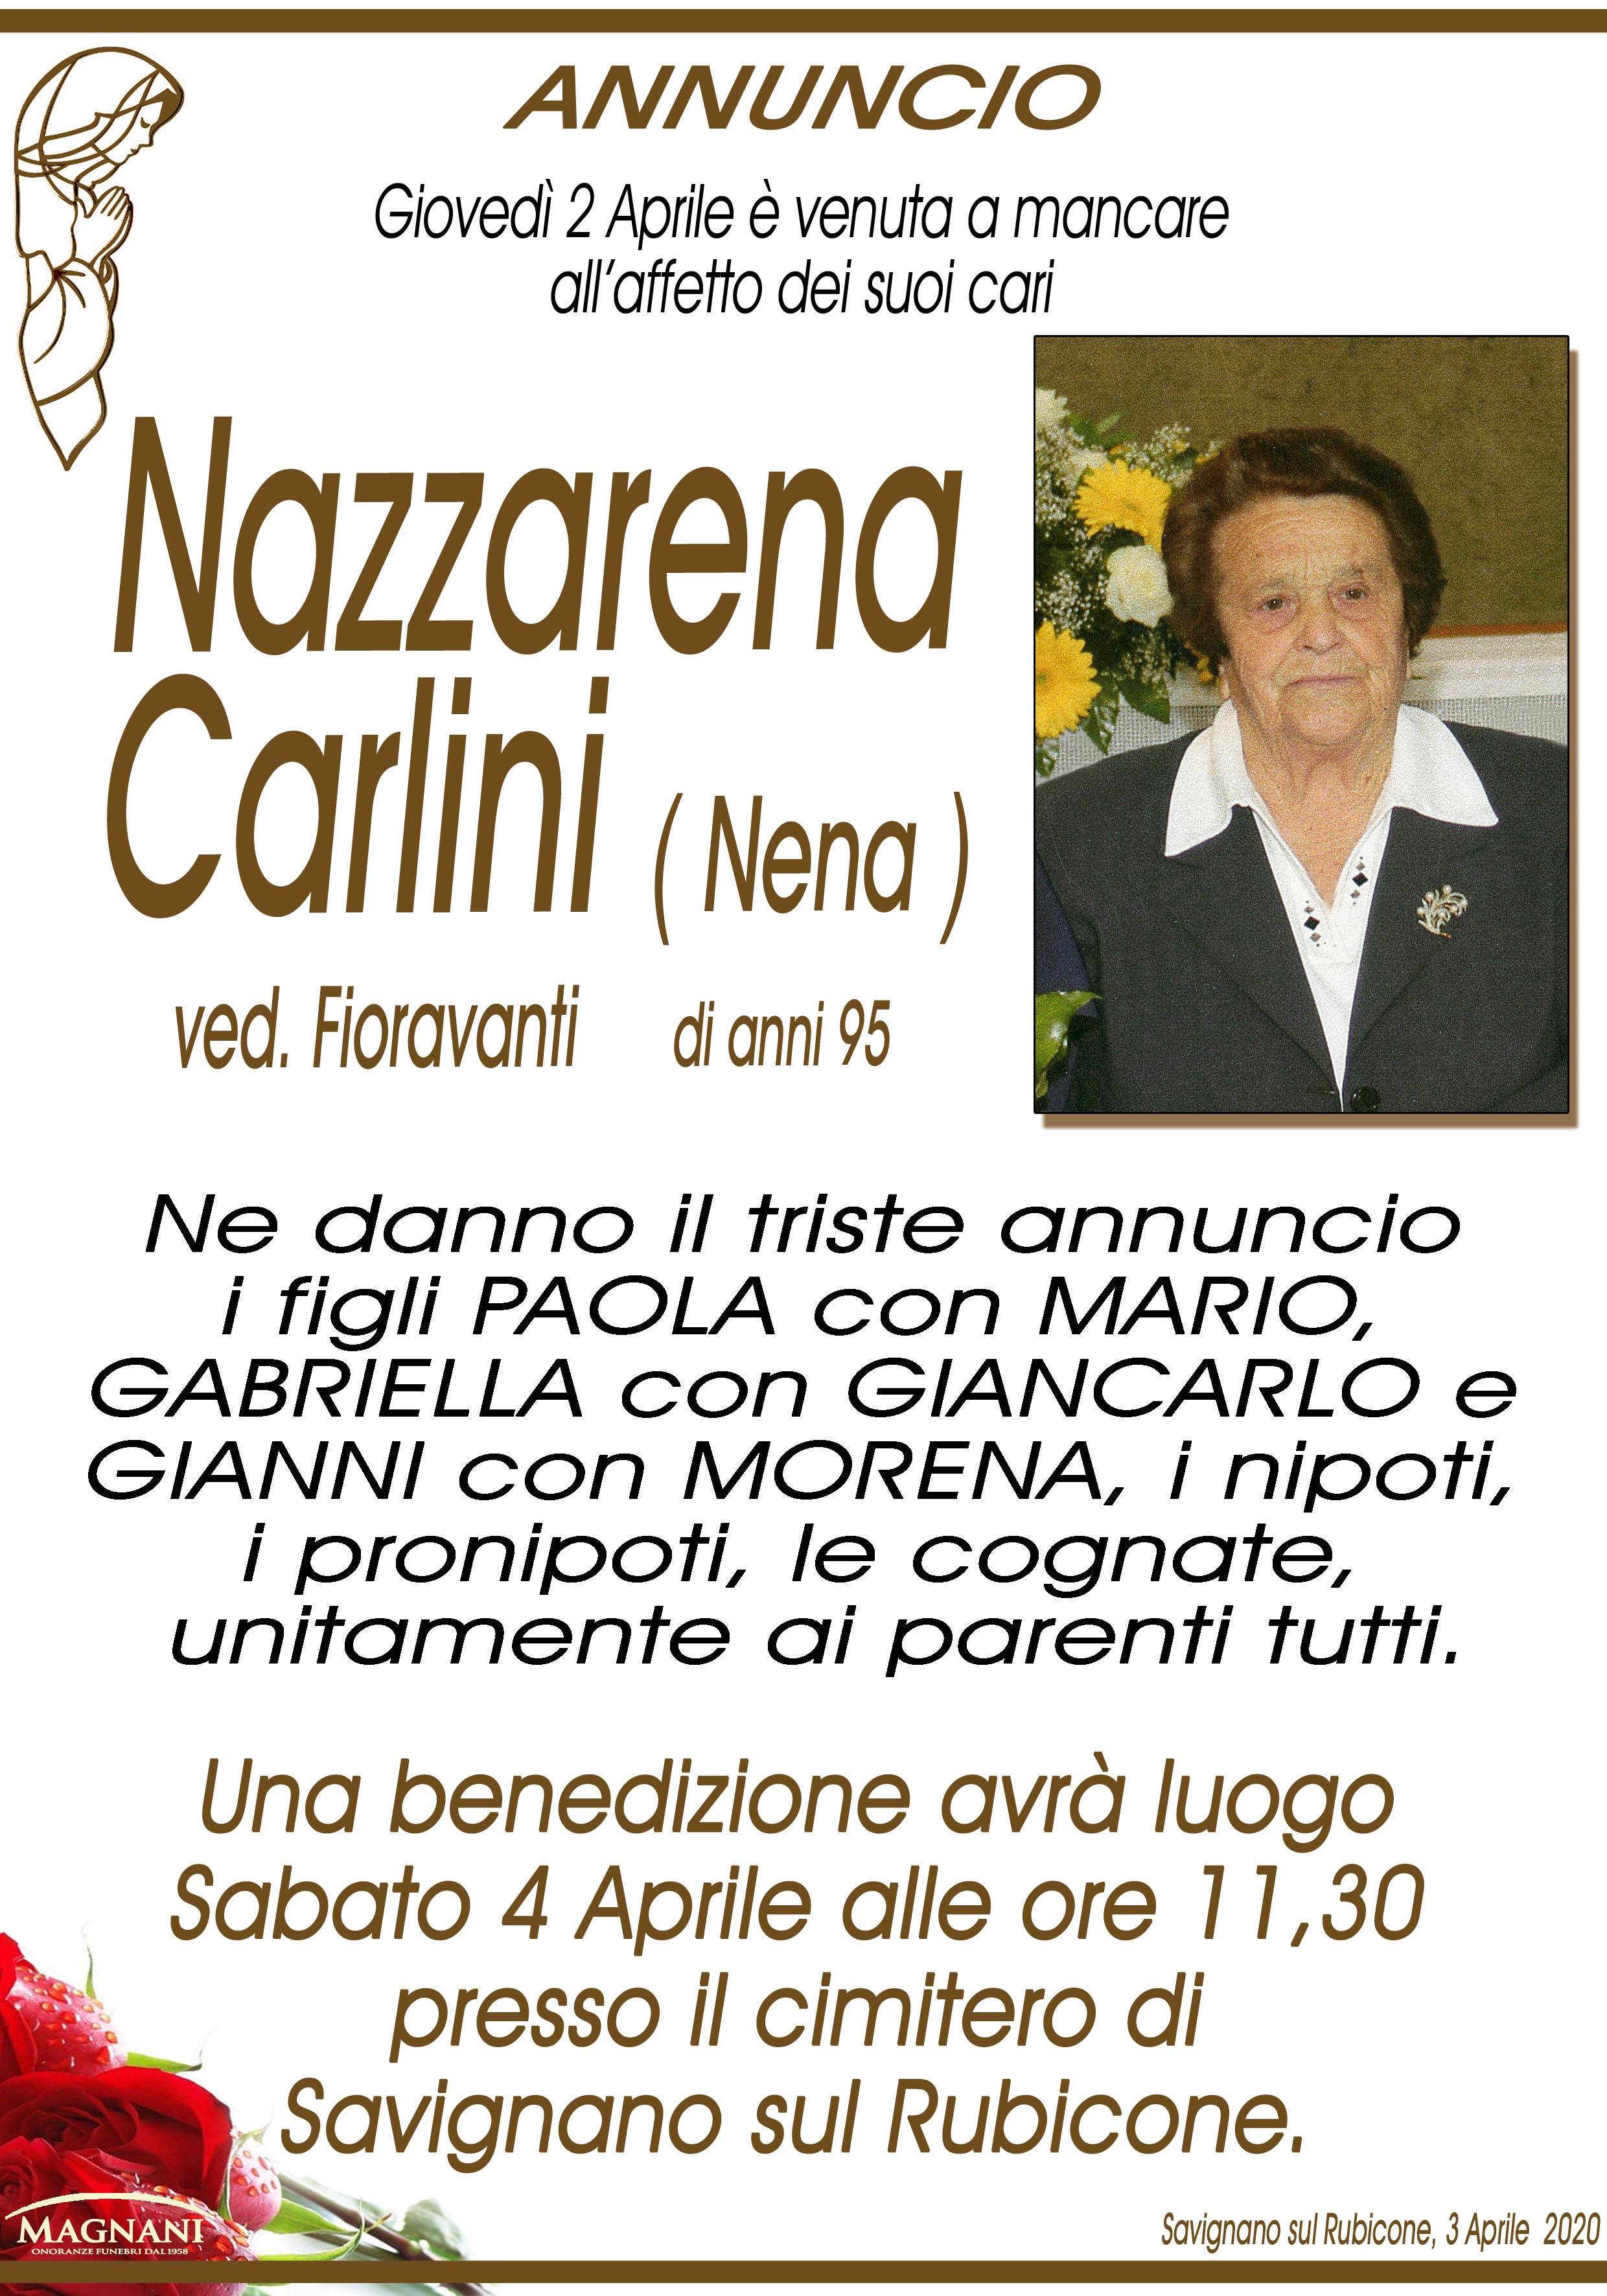 Nazzarena Carlini